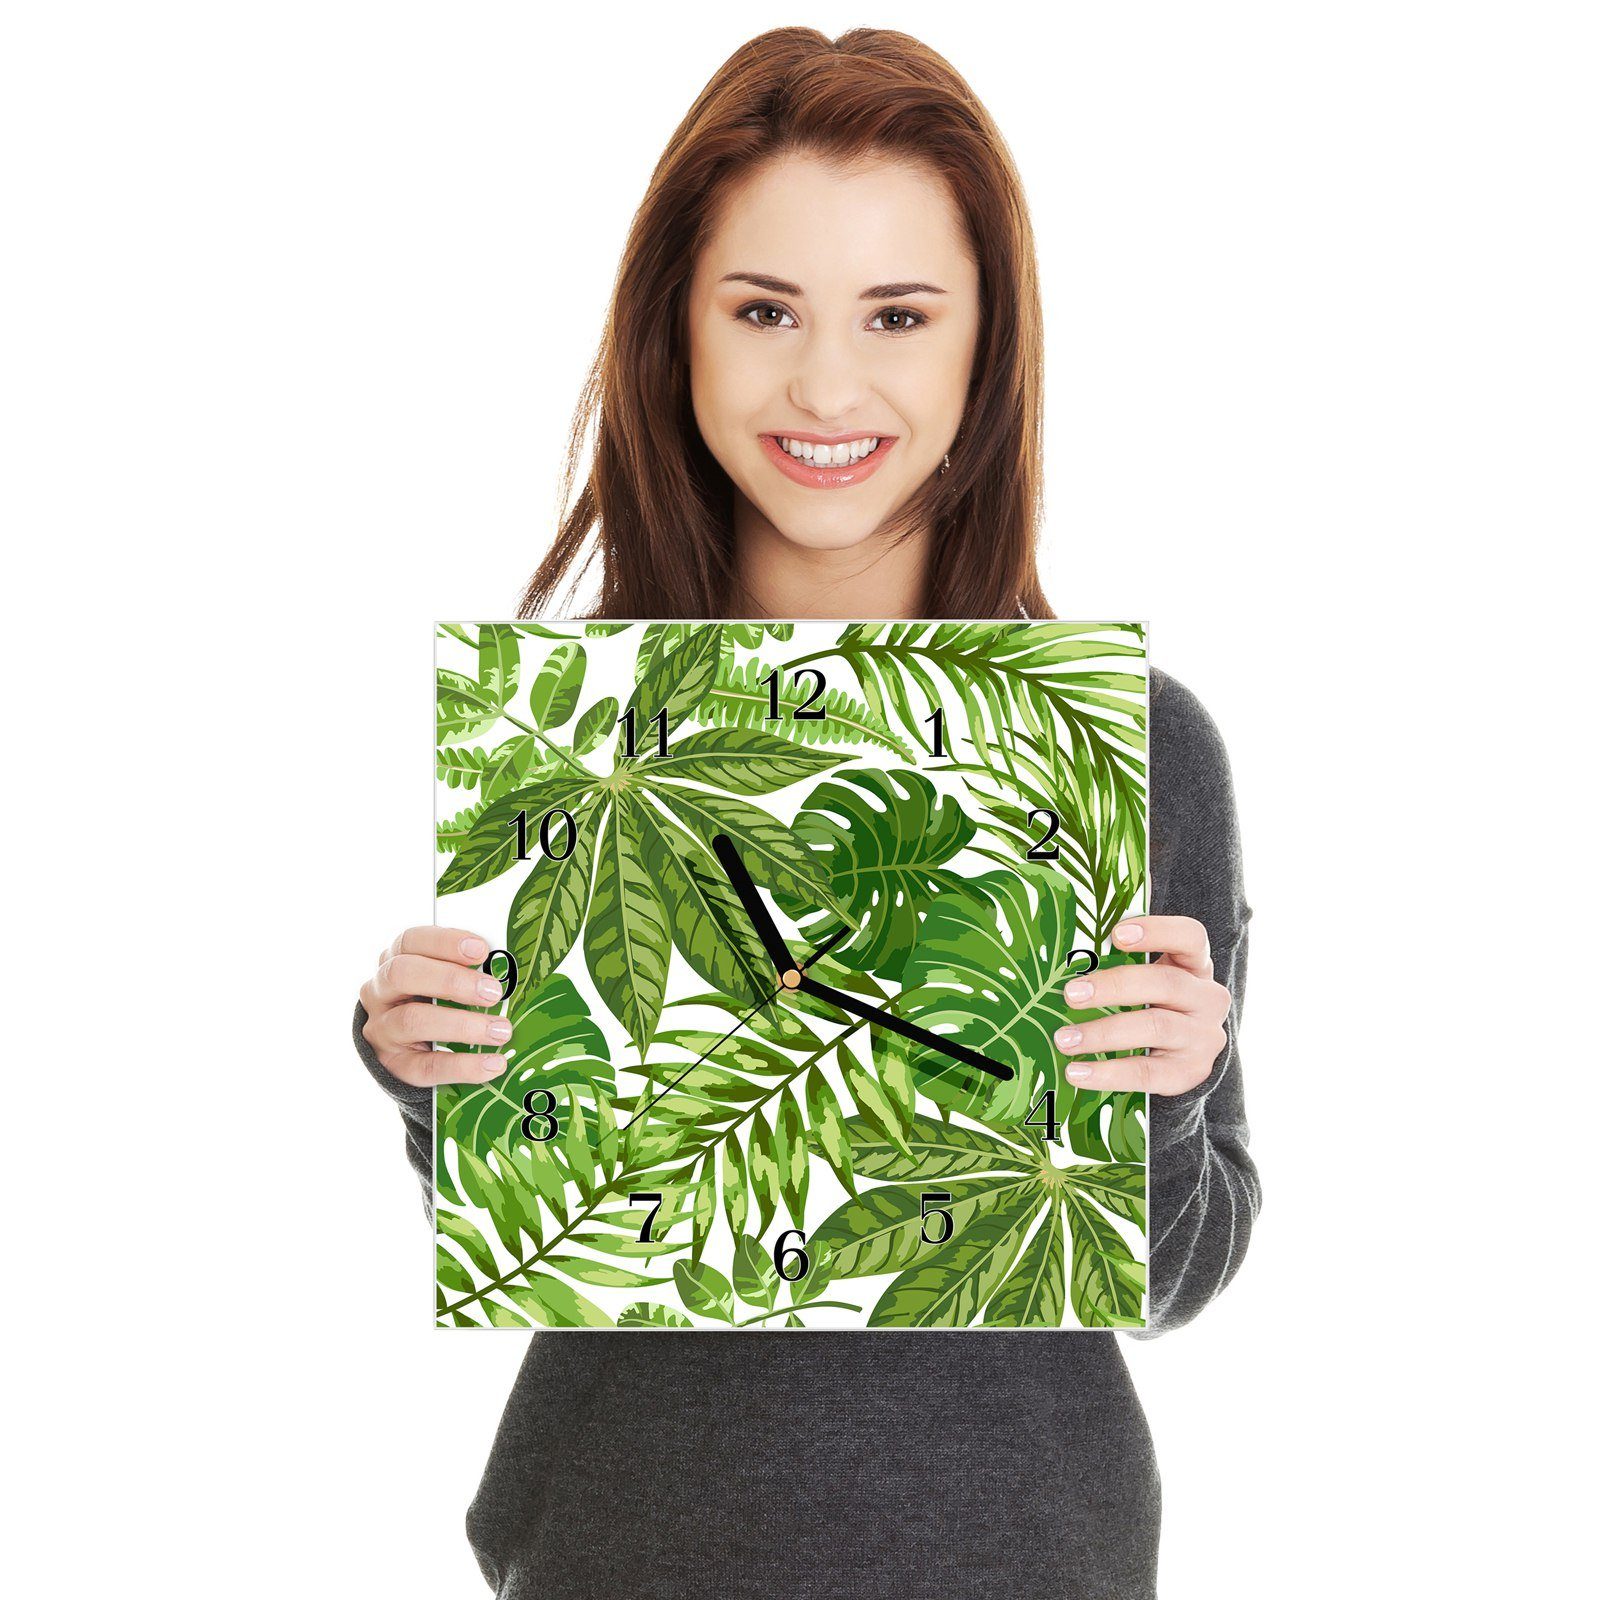 Primedeco Dschungelblätter Muster x Wandkunst aus mit Wanduhr cm Glasuhr Größe 30 Motiv Wanduhr 30